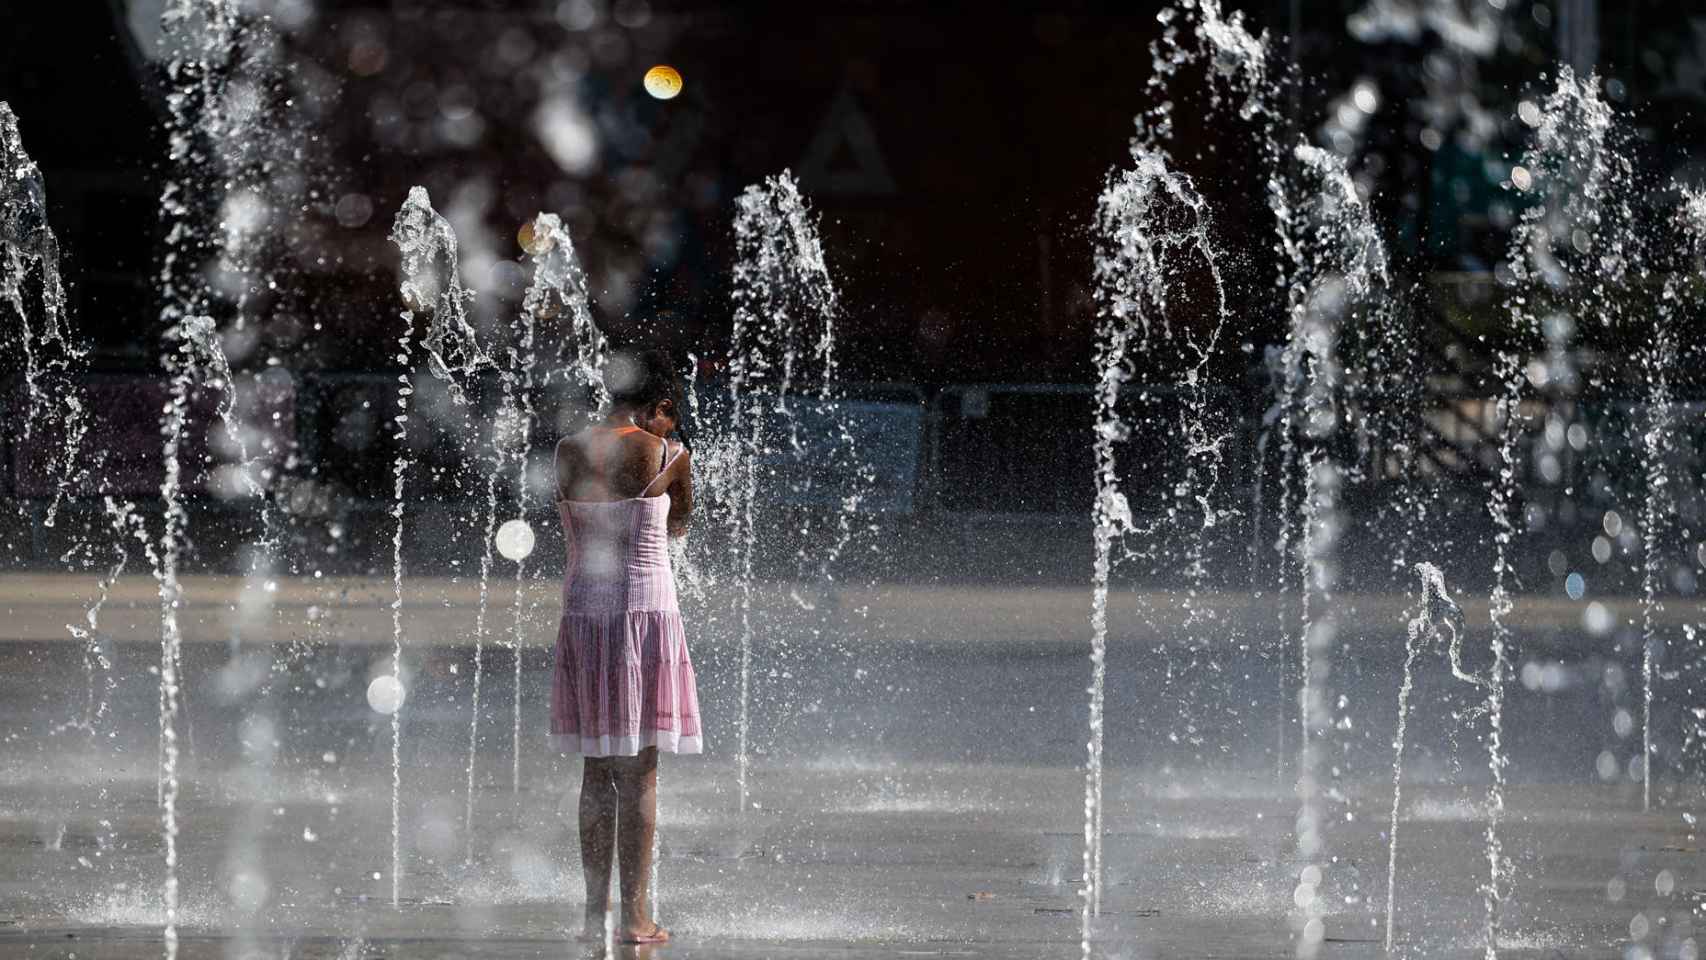 Una niña juega en una fuente para refrescarse del calor.